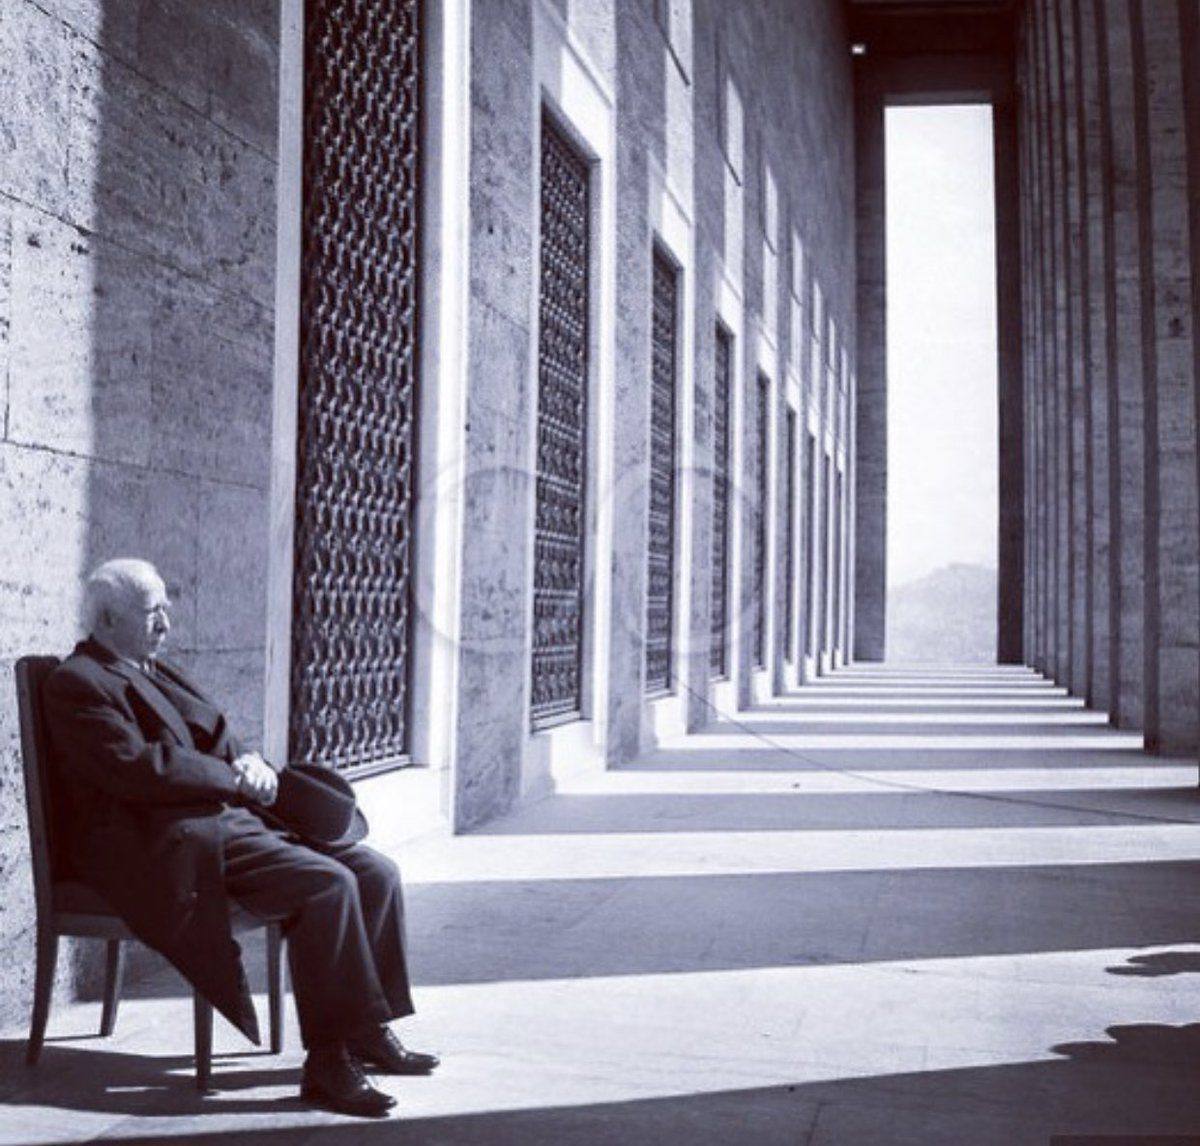 İsmet İnönü her 10 Kasım’da herkesten önce Anıtkabir’e gider, dava arkadaşı Atatürk’ün kabrinin karşısına oturur; sessizce dertleşirdi, bu ritüel ölene kadar devam etti.